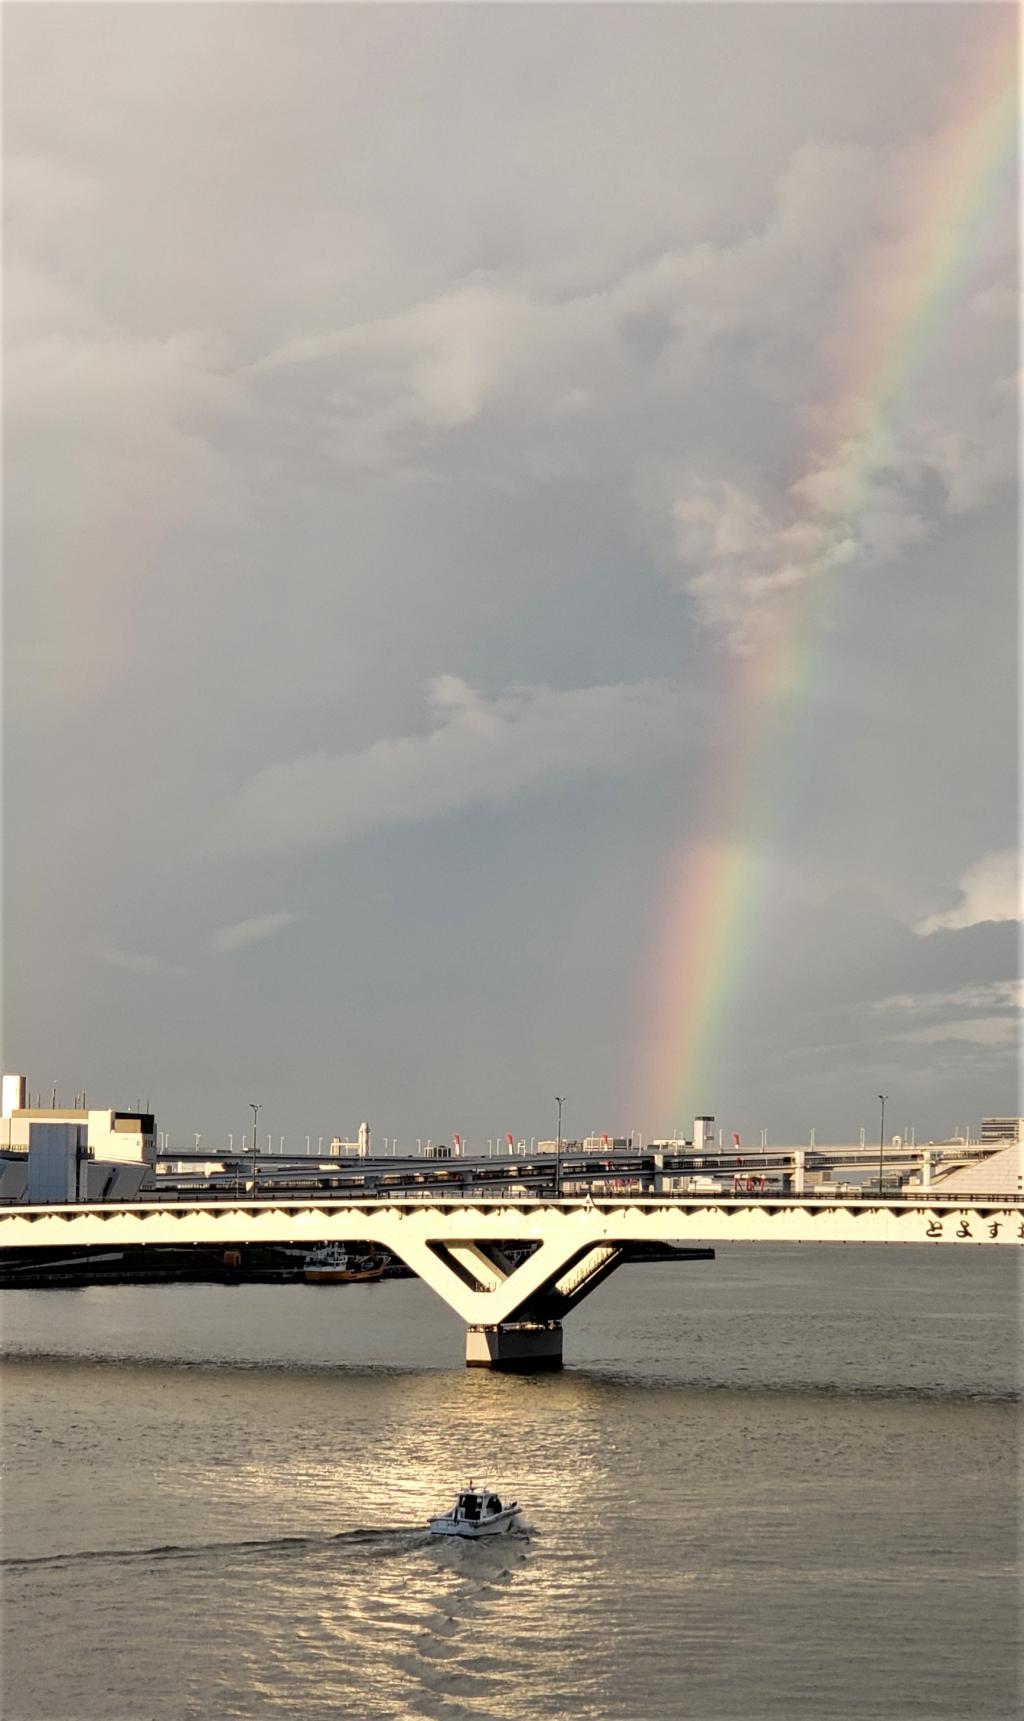  東京オリンピック・パラリンピック2020大会選手村に
大きな　虹があらわれました。